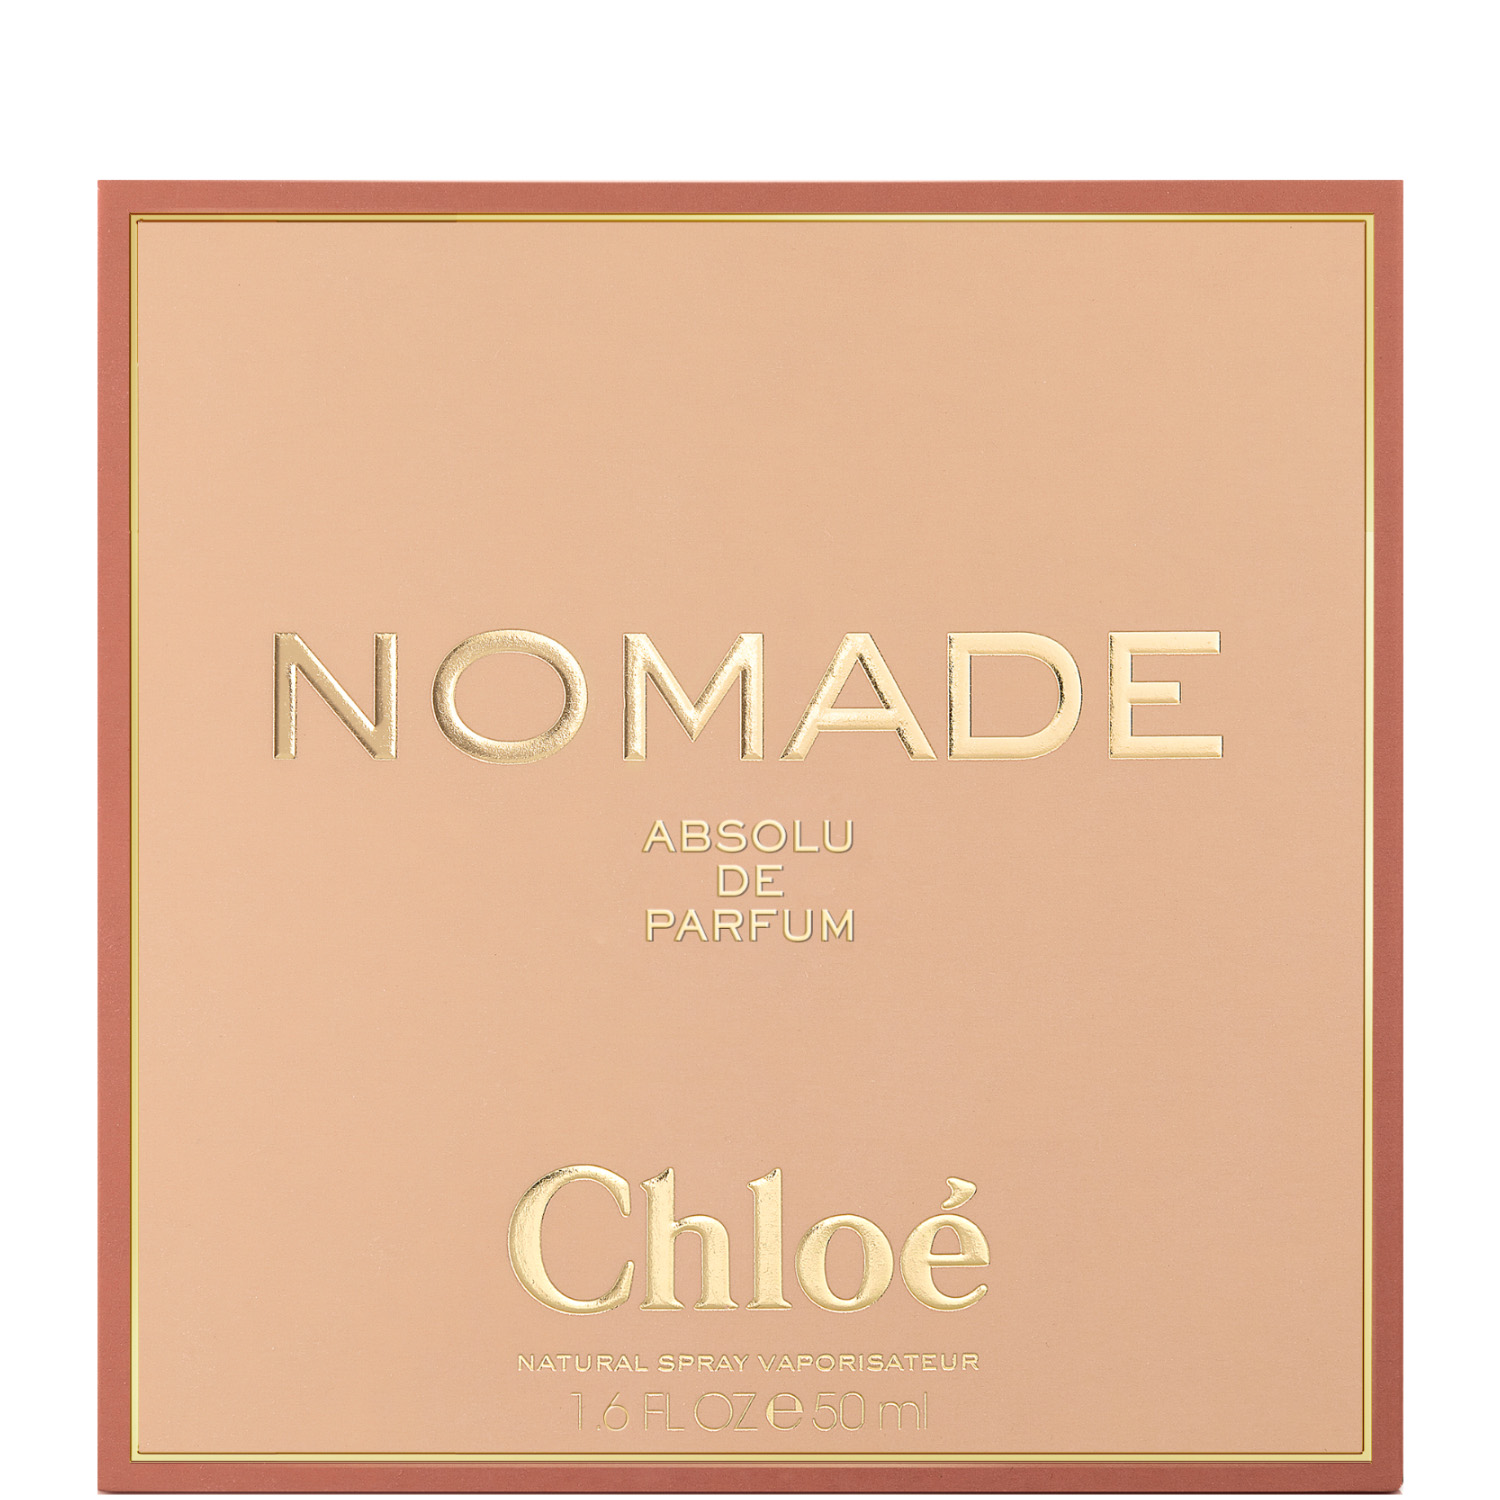 Chloé Nomade Absolue de Parfum Eau de Parfum 50ml